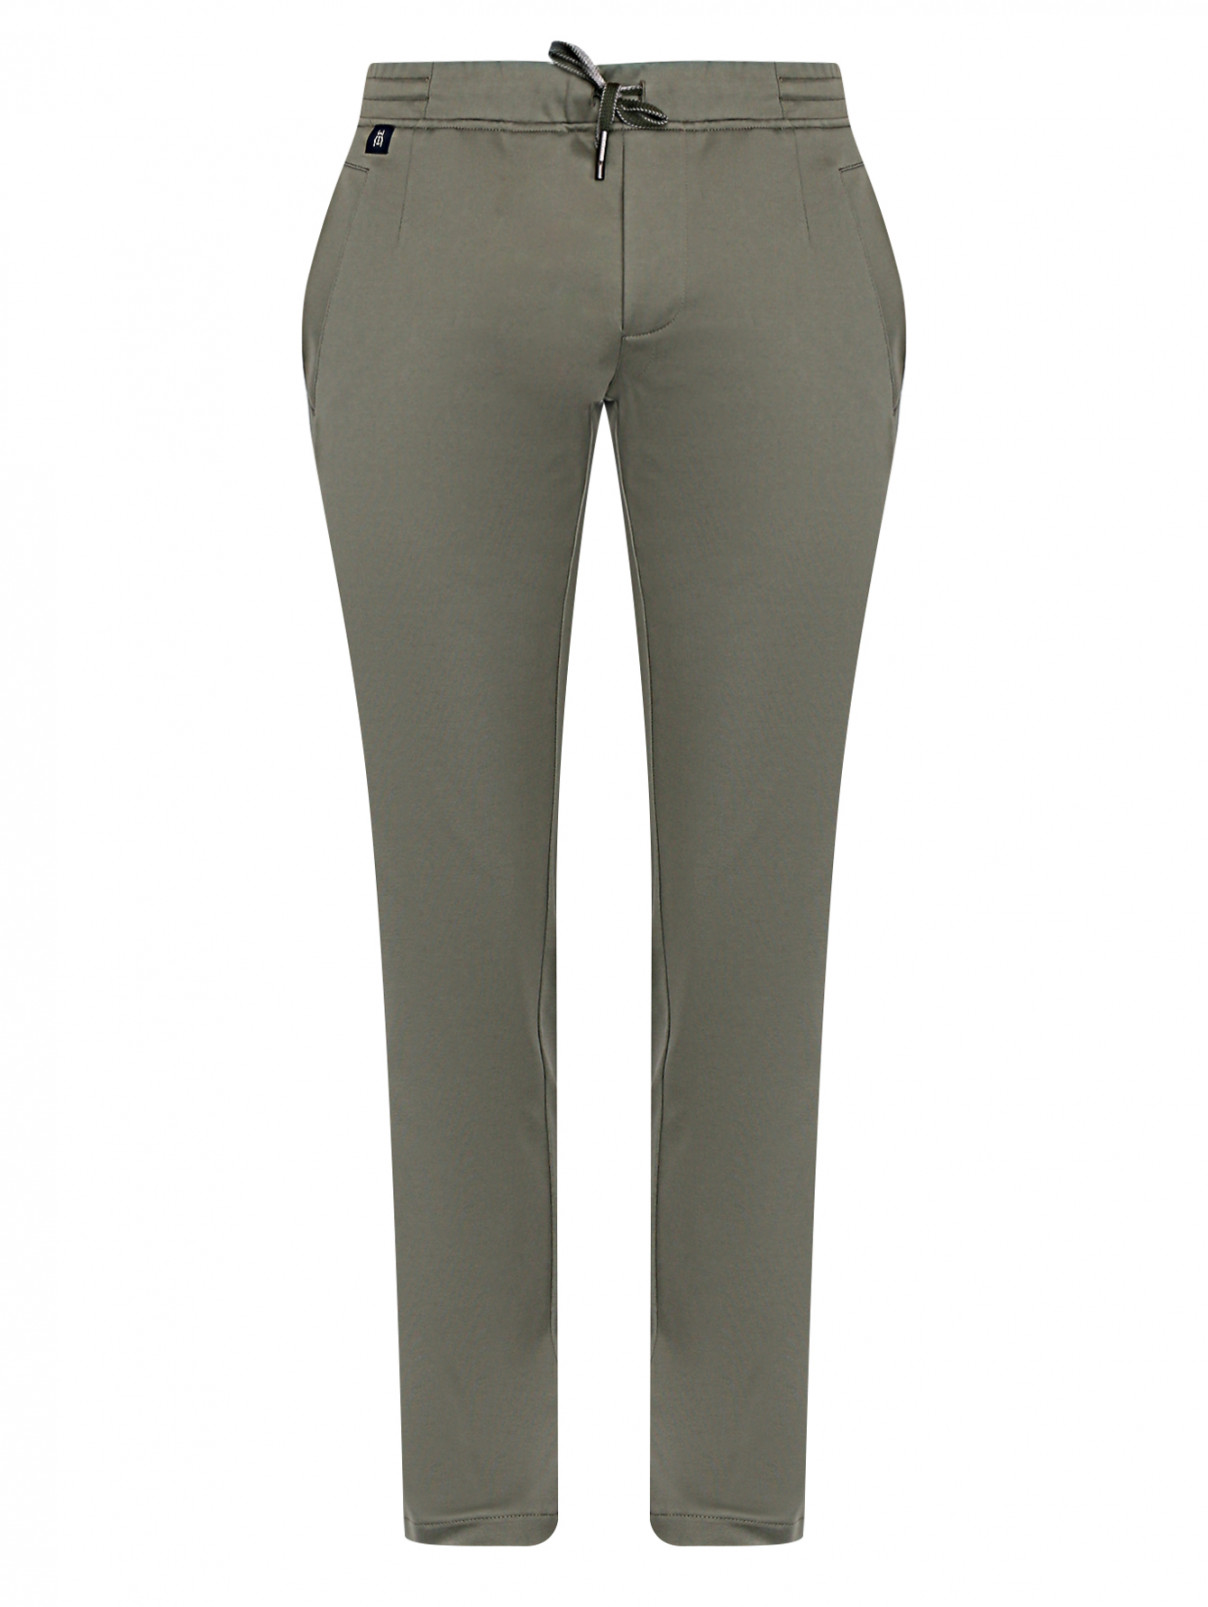 Трикотажные брюки на резинке Capobianco  –  Общий вид  – Цвет:  Зеленый